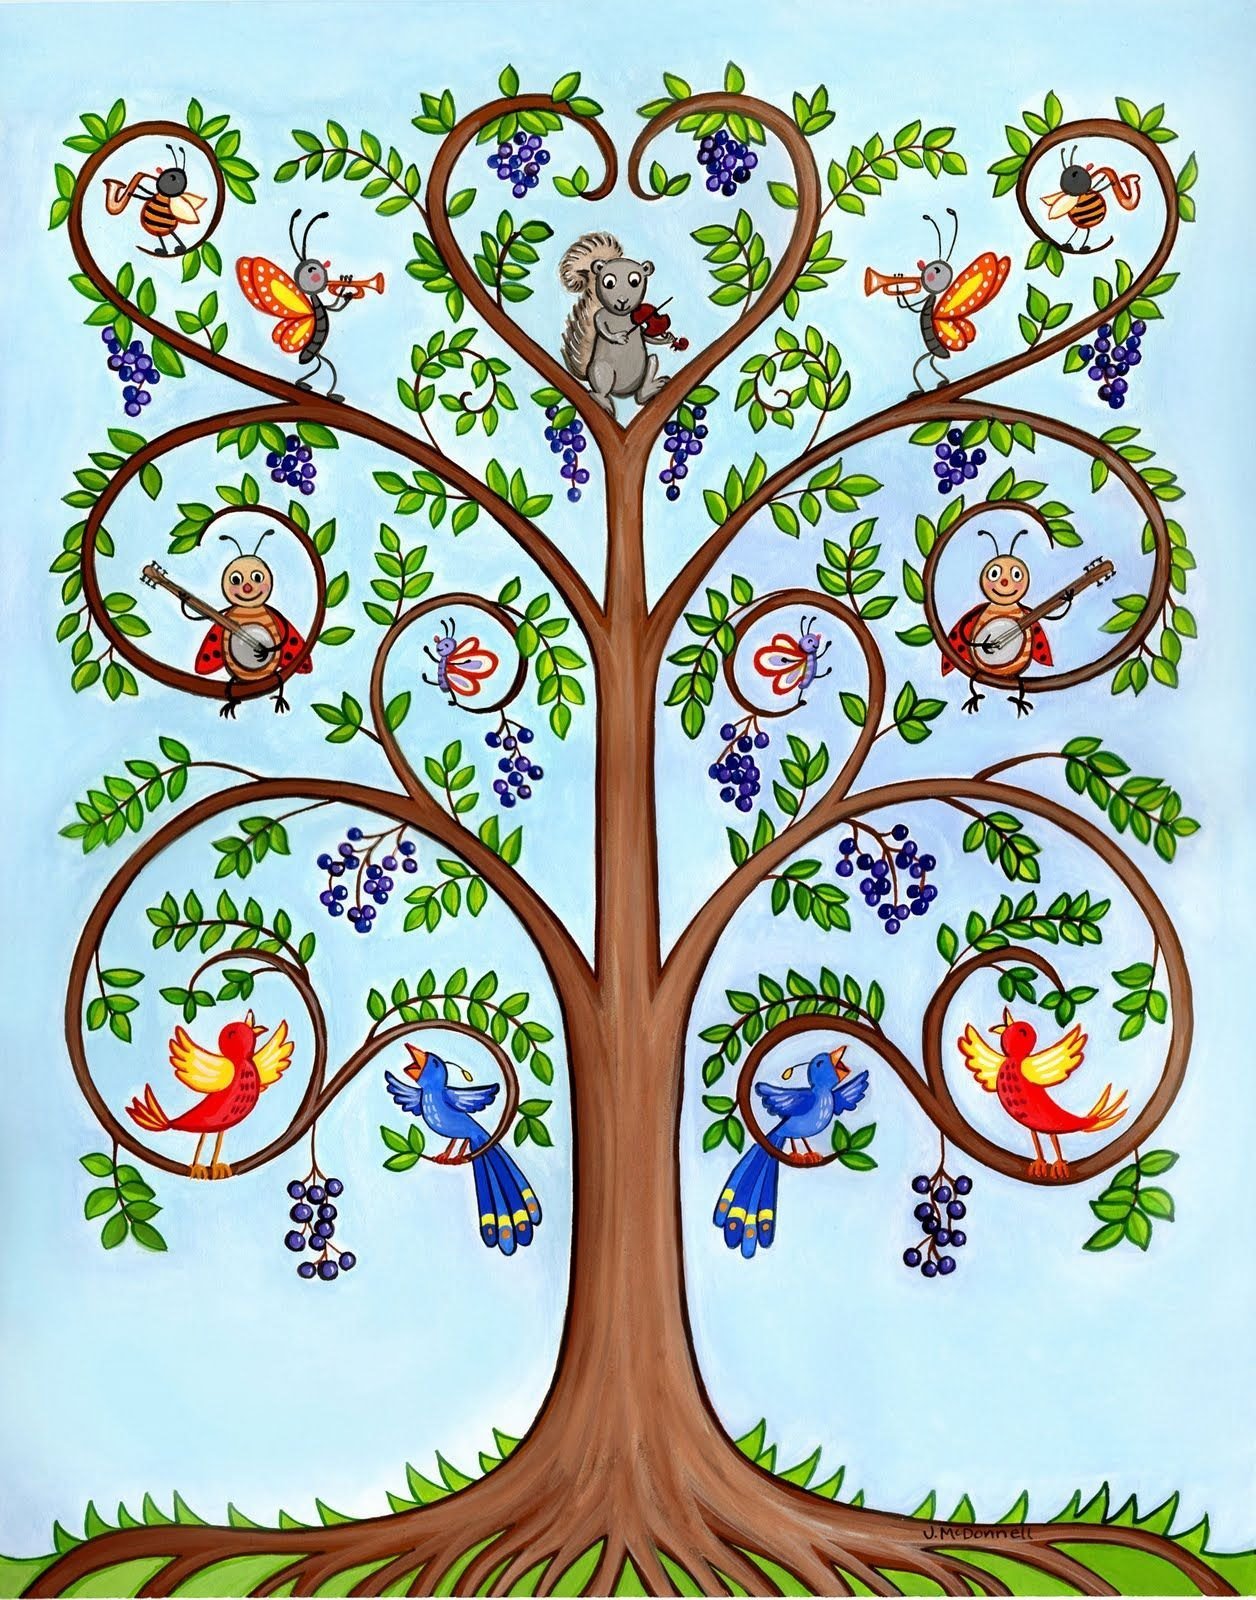 Ком дерево жизни. Древо жизни родословная. Чудо дерево Древо жизни. "Tree of Life" ("дерево жизни") by degree. Образ дерева.